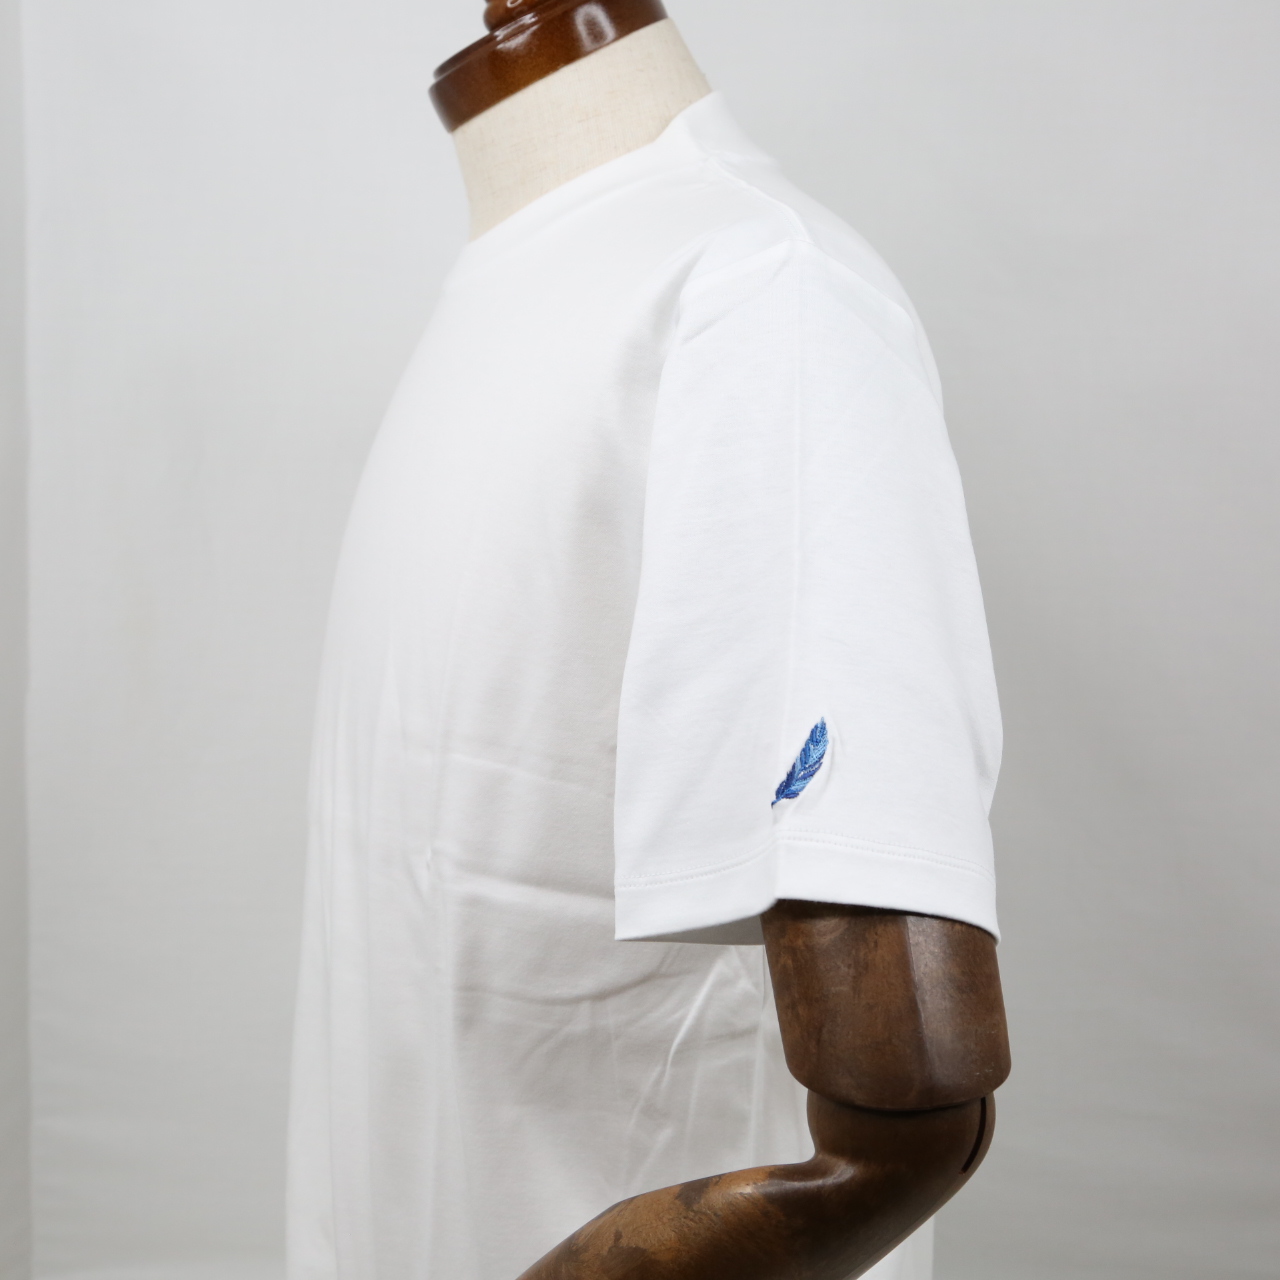 プレミアムドレス Tシャツ  FATTURA  シャツ  半袖  袖口刺繍  ホワイト  メンズファッション  日本製